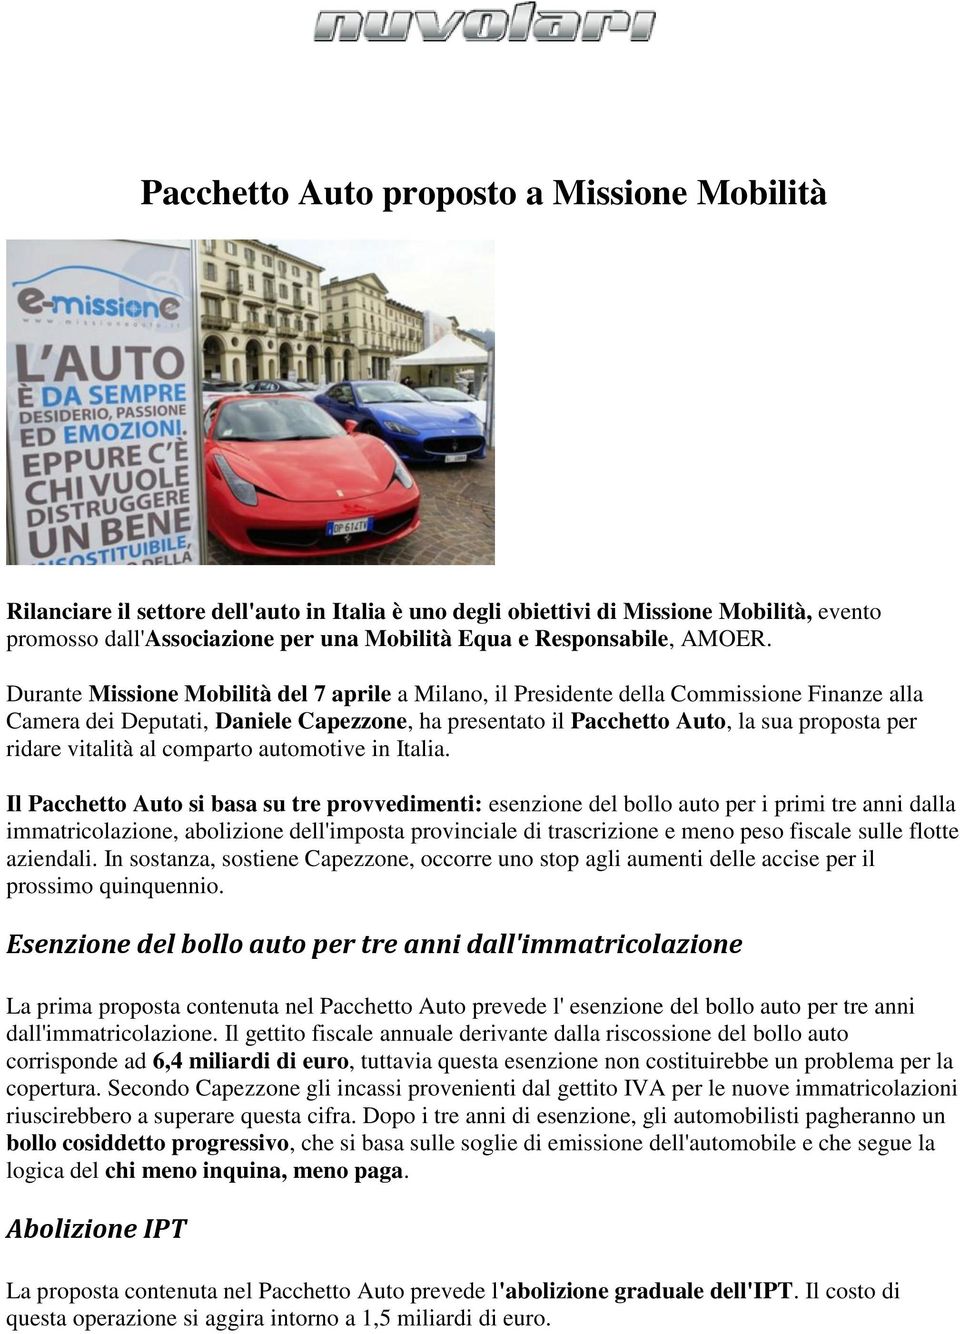 Durante Missione Mobilità del 7 aprile a Milano, il Presidente della Commissione Finanze alla Camera dei Deputati, Daniele Capezzone, ha presentato il Pacchetto Auto, la sua proposta per ridare